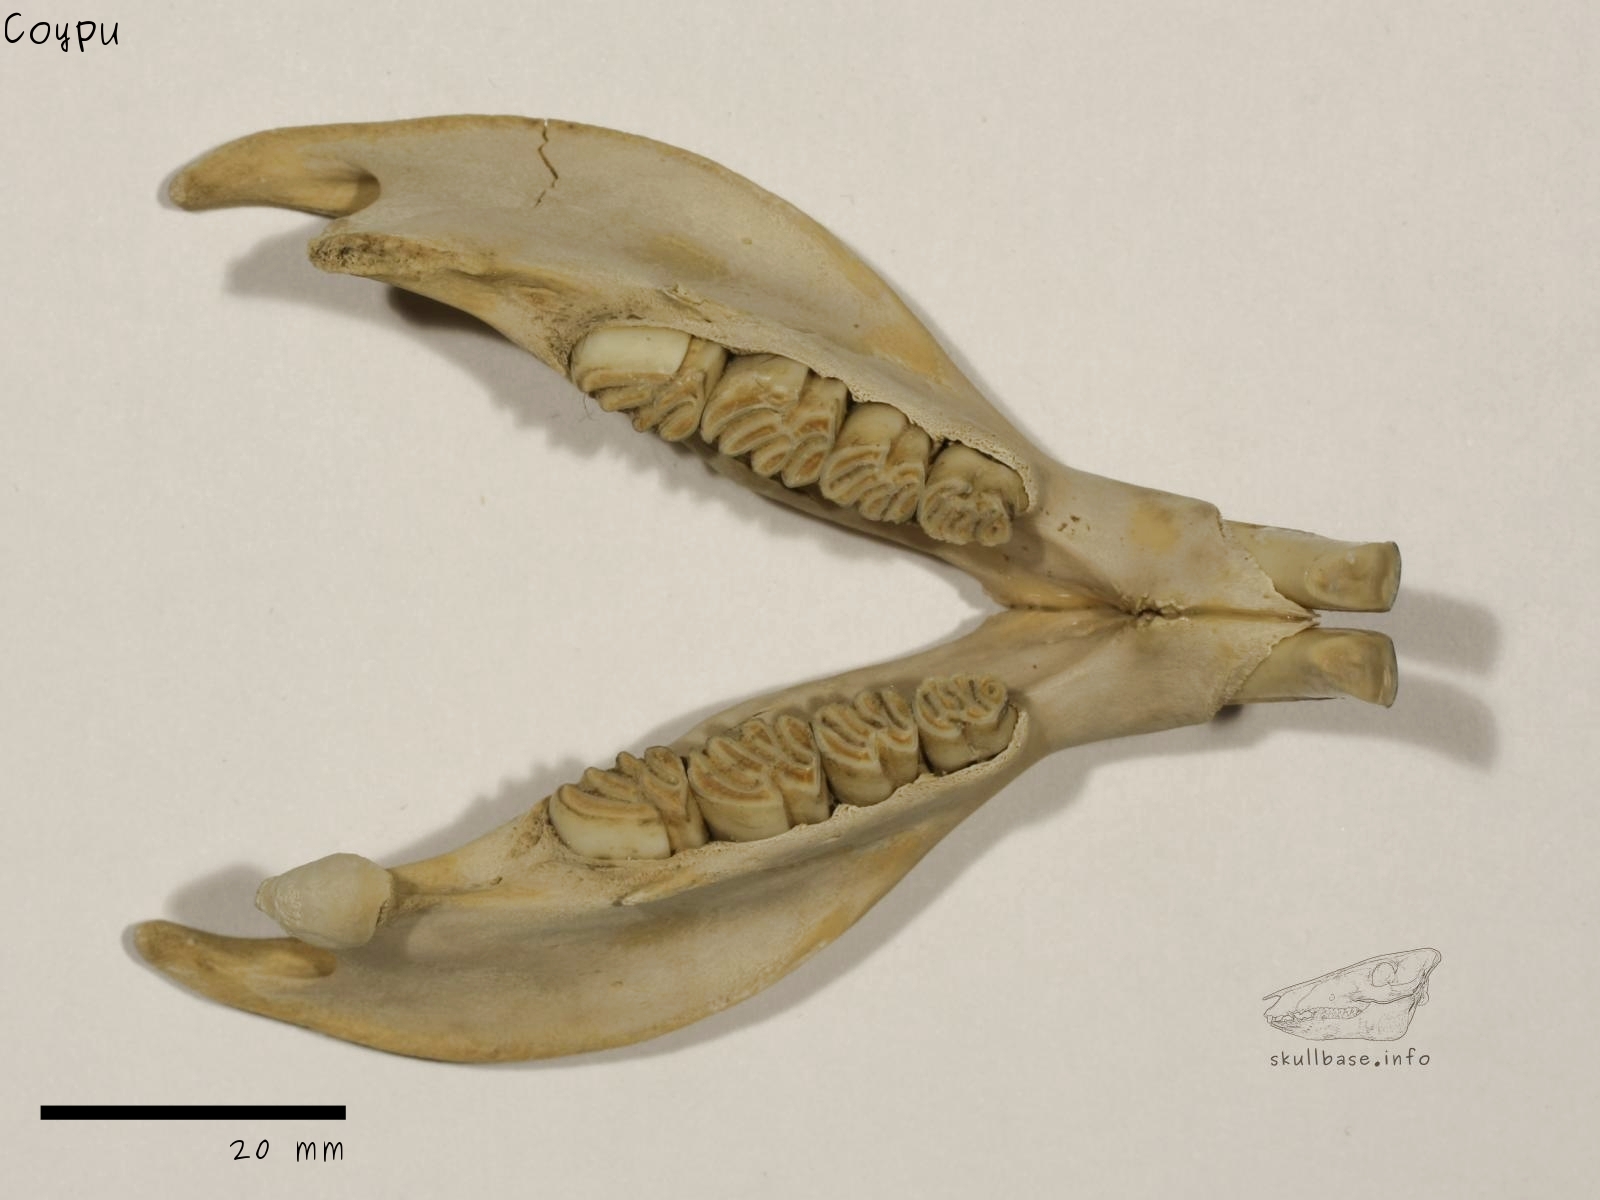 Coypu (Myocastor coypus) jaw